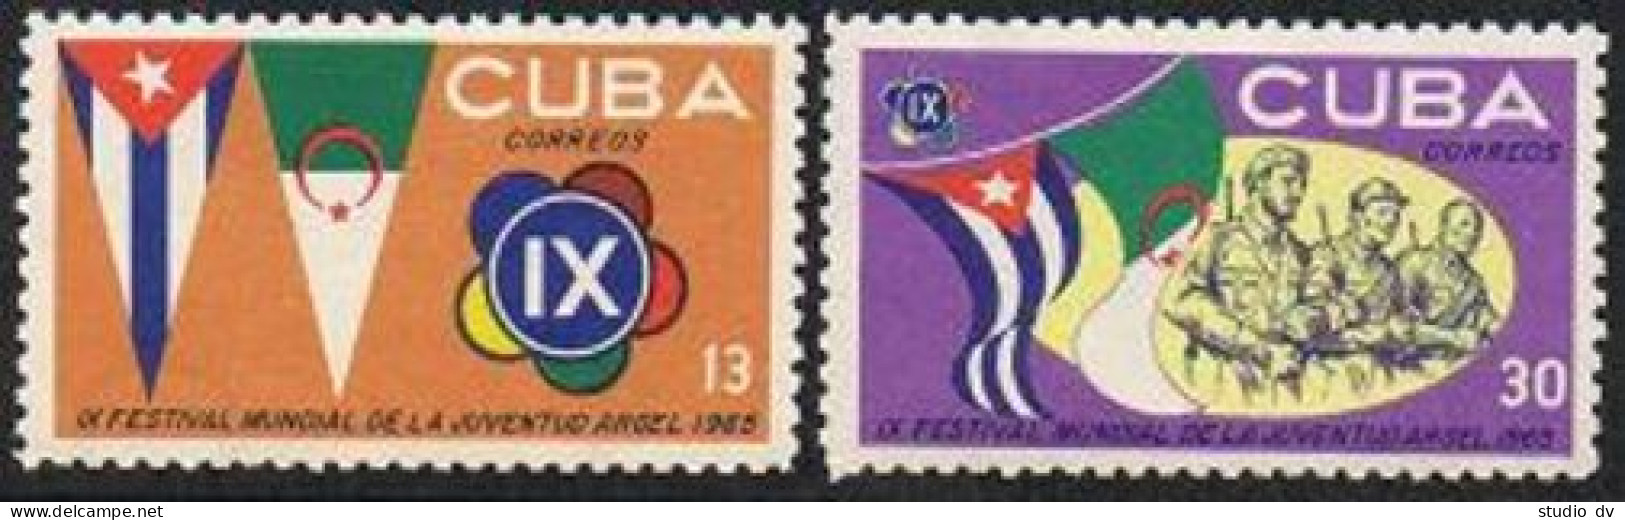 Cuba 969-970,MNH. World Youth, Students Congress, 1965. - Neufs